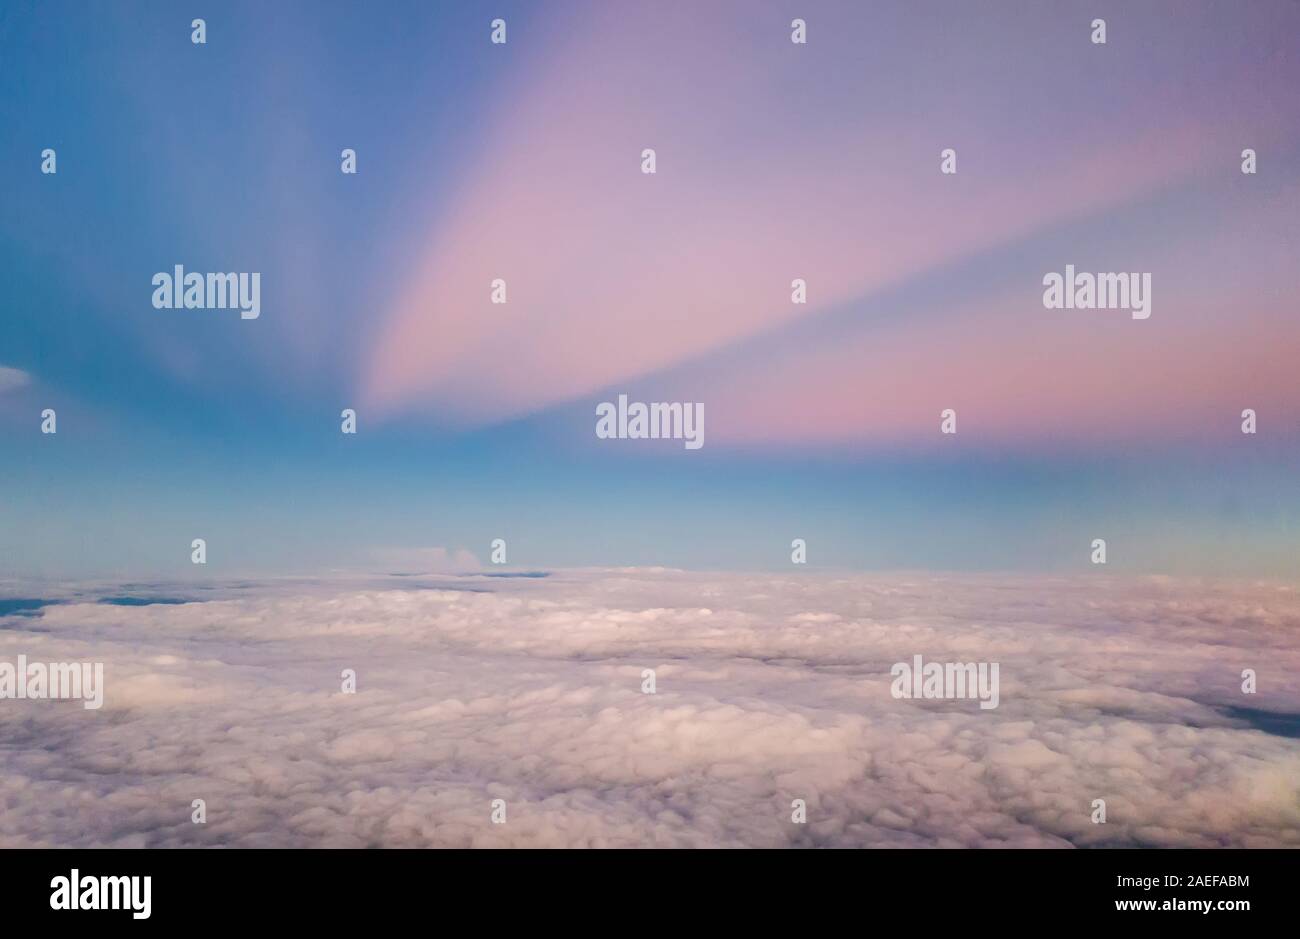 Belle atmosphère ciel pastel sur fond blanc nuage gonflé avant le coucher du soleil comme vu à travers la vitre de la fenêtre de l'avion, l'avion Voyager en avion. Banque D'Images